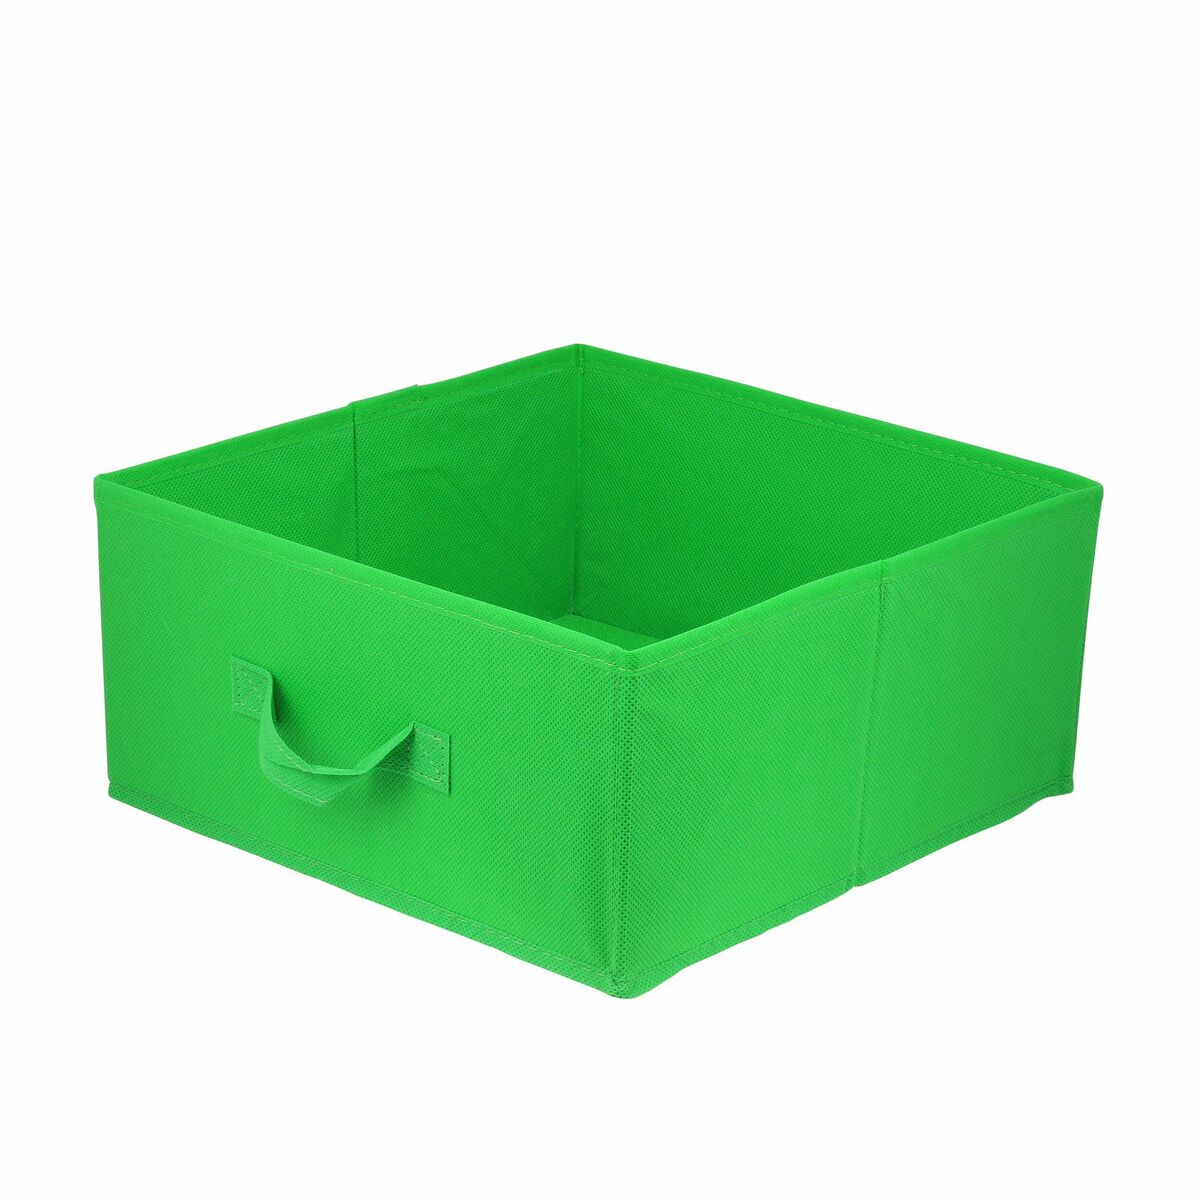 Pudełko tekstylne Kub 31 x 31 x 15 cm zielone